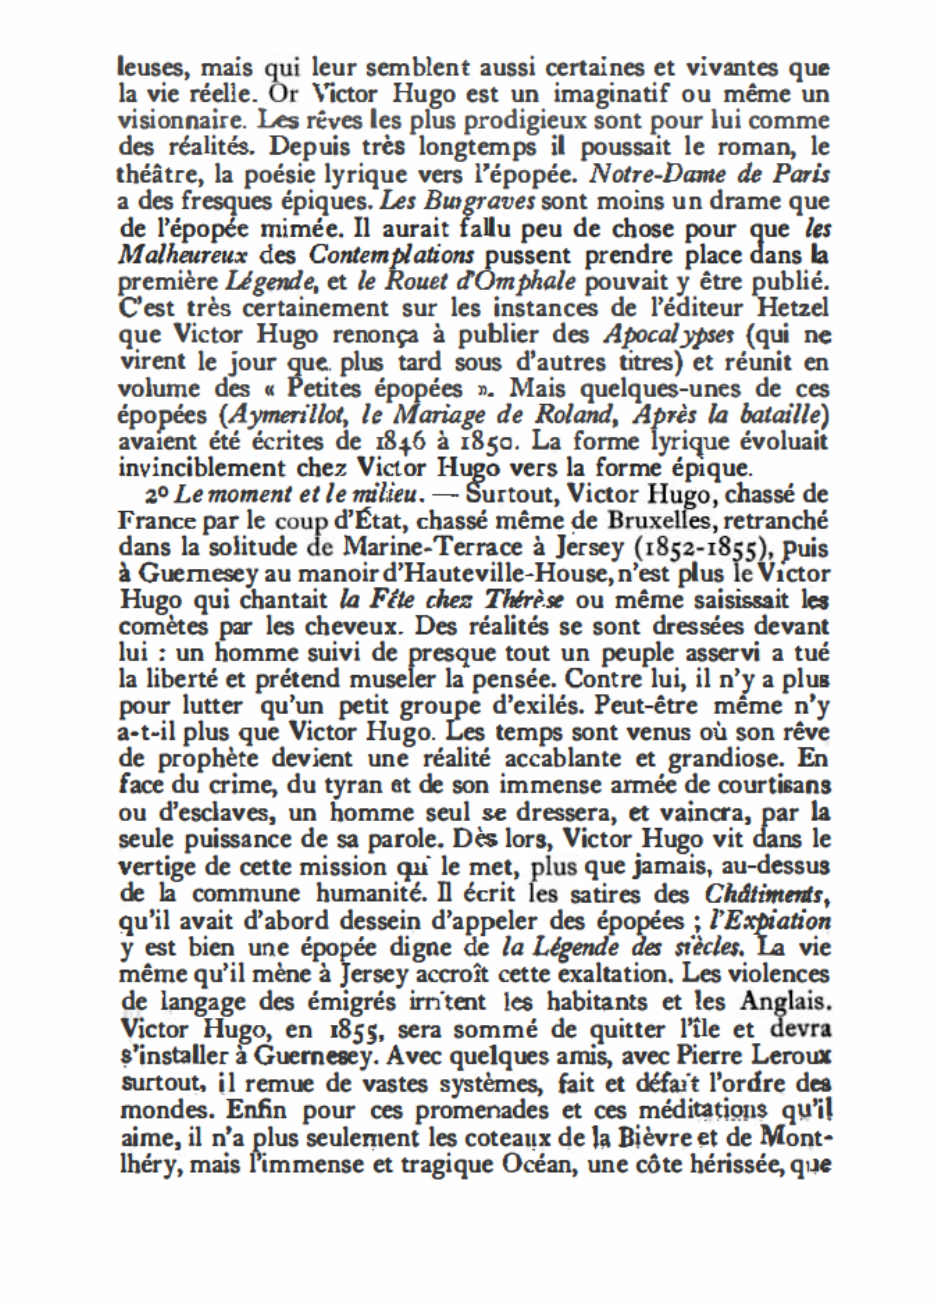 Prévisualisation du document « La Légende des siècles », épopée grandiose.